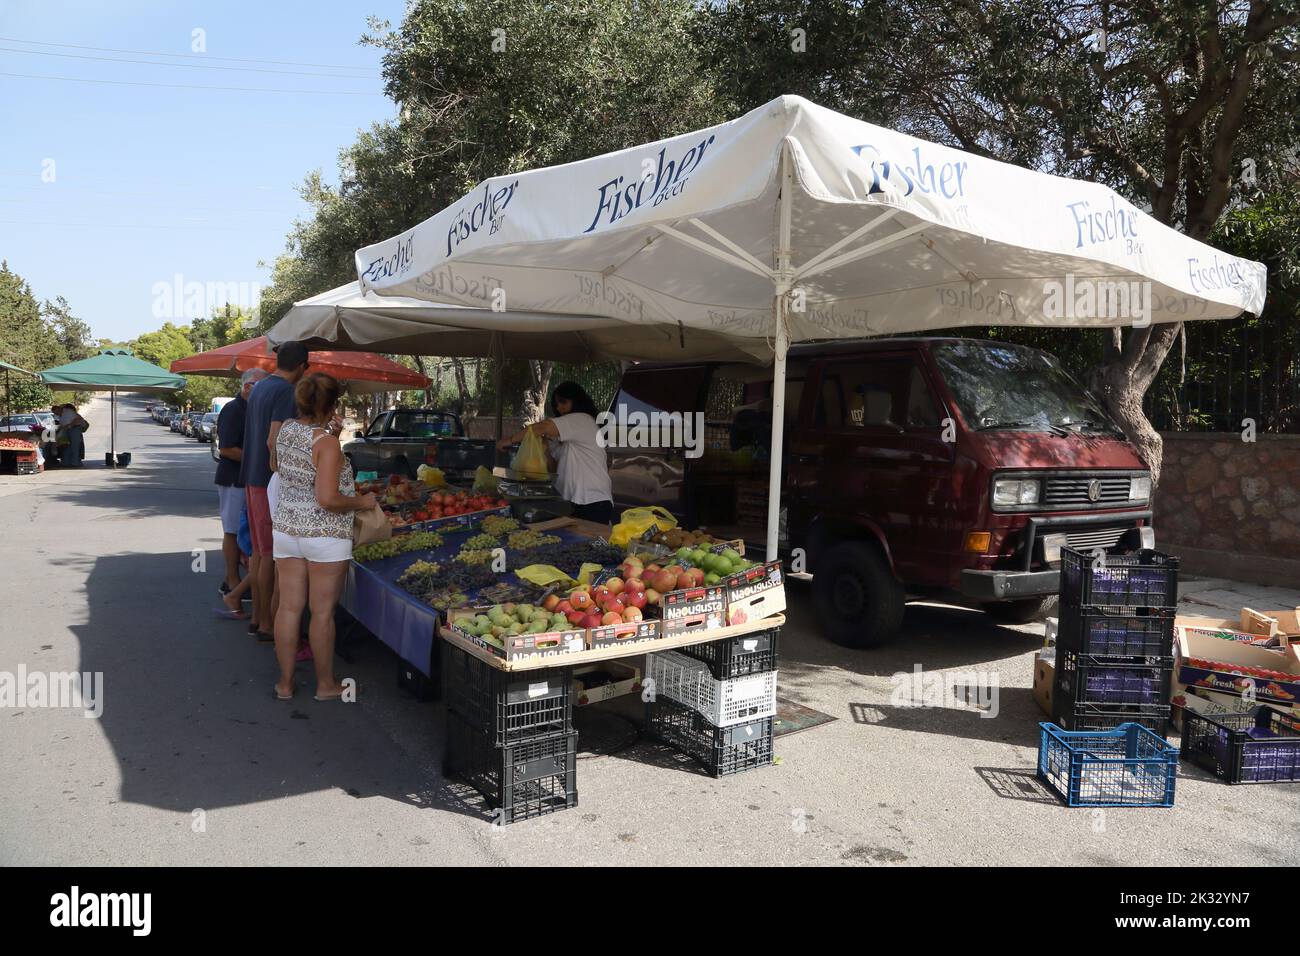 Personnes Shopping au marché du samedi porte-clés Vente de fruits et légumes Vouliagmeni Athènes Grèce Banque D'Images